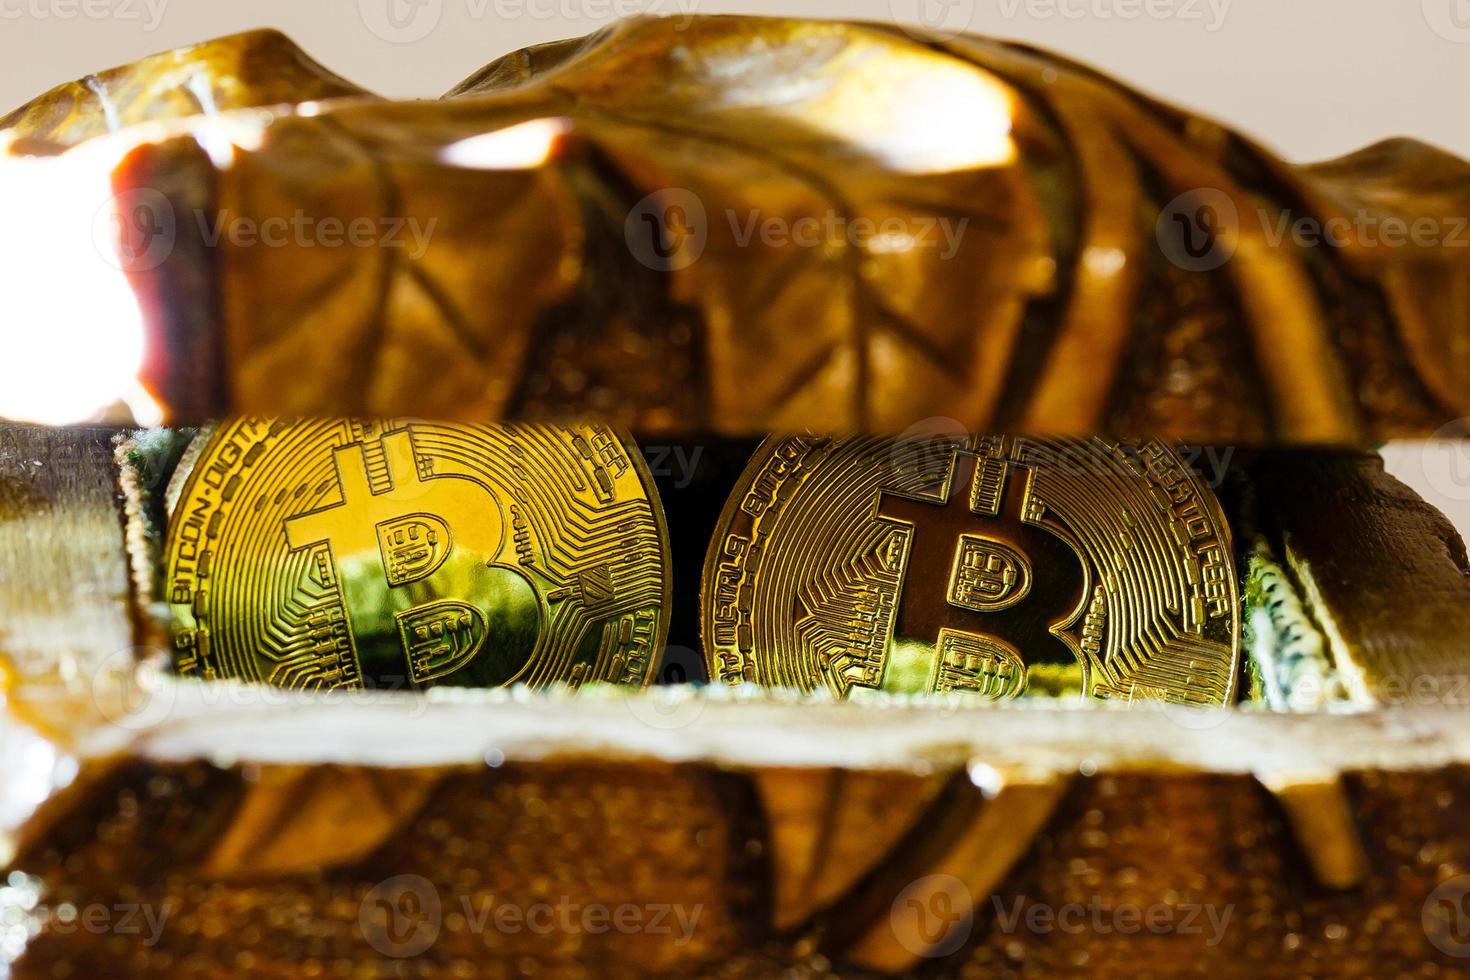 tesoros de bitcoin dorado moneda criptográfica misteriosa caja de madera antigua dinero virtual foto